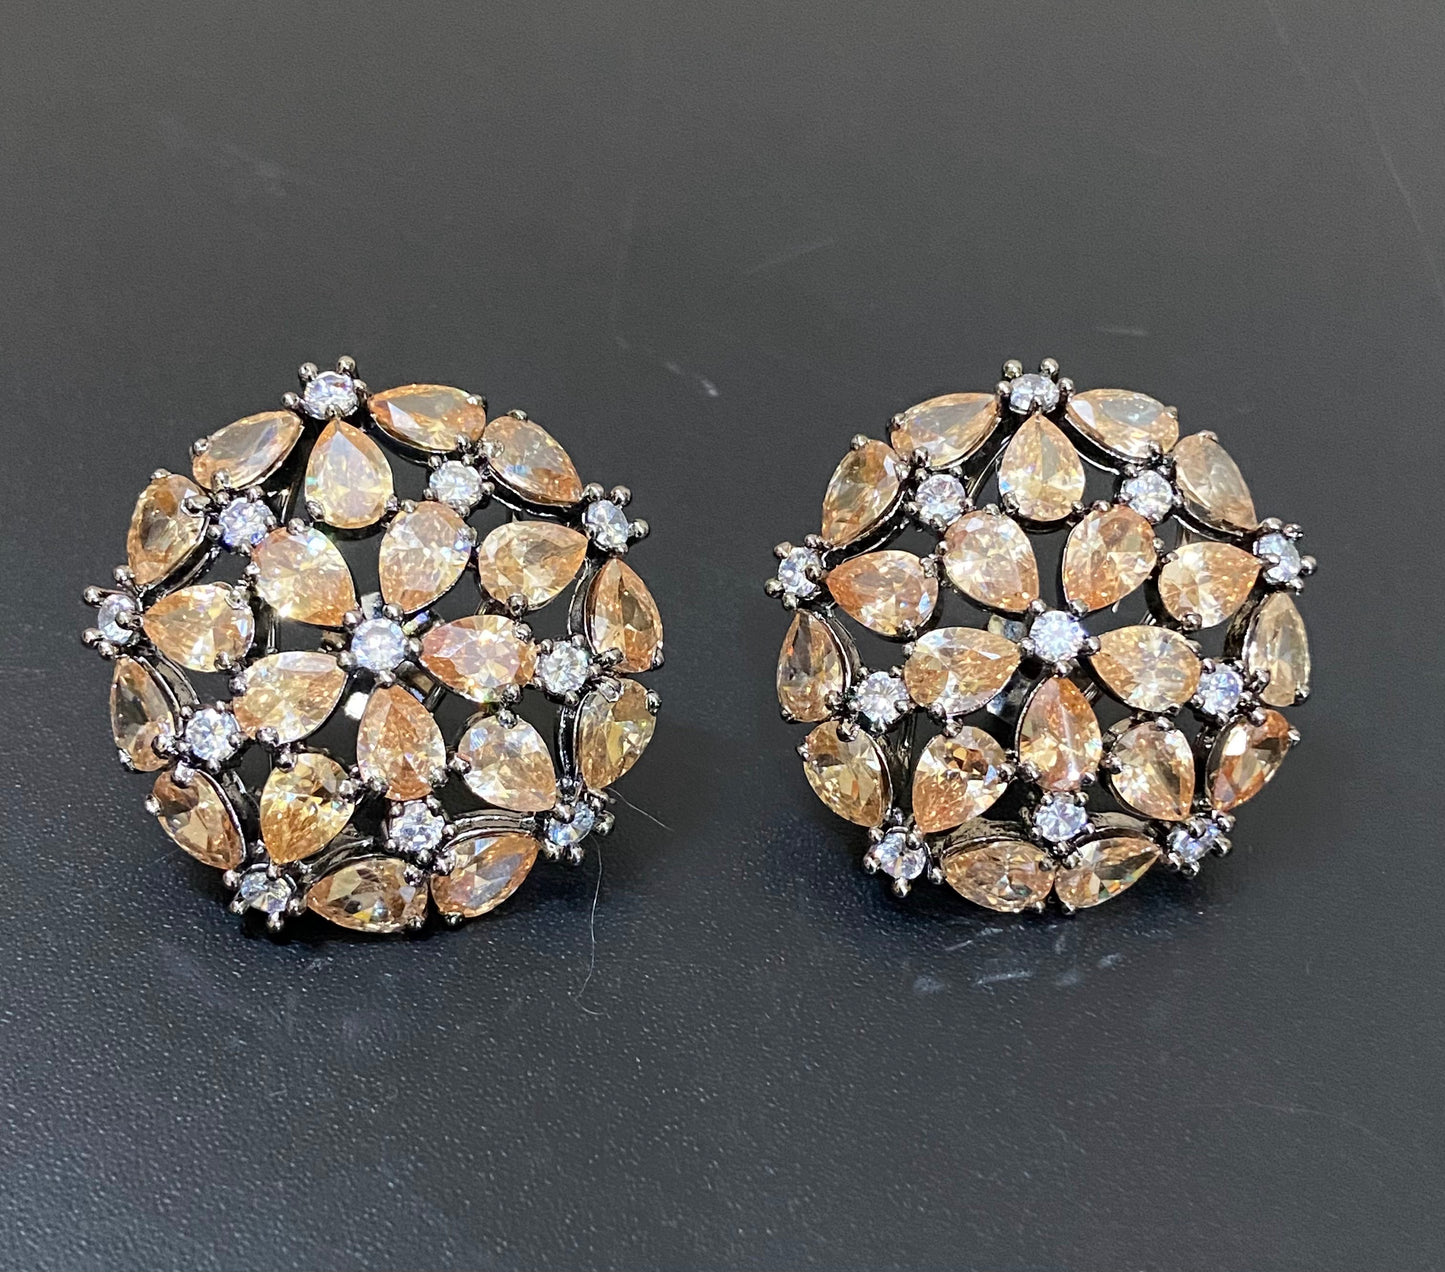 Victorian earrings | AD earrings | Victorian jewelry